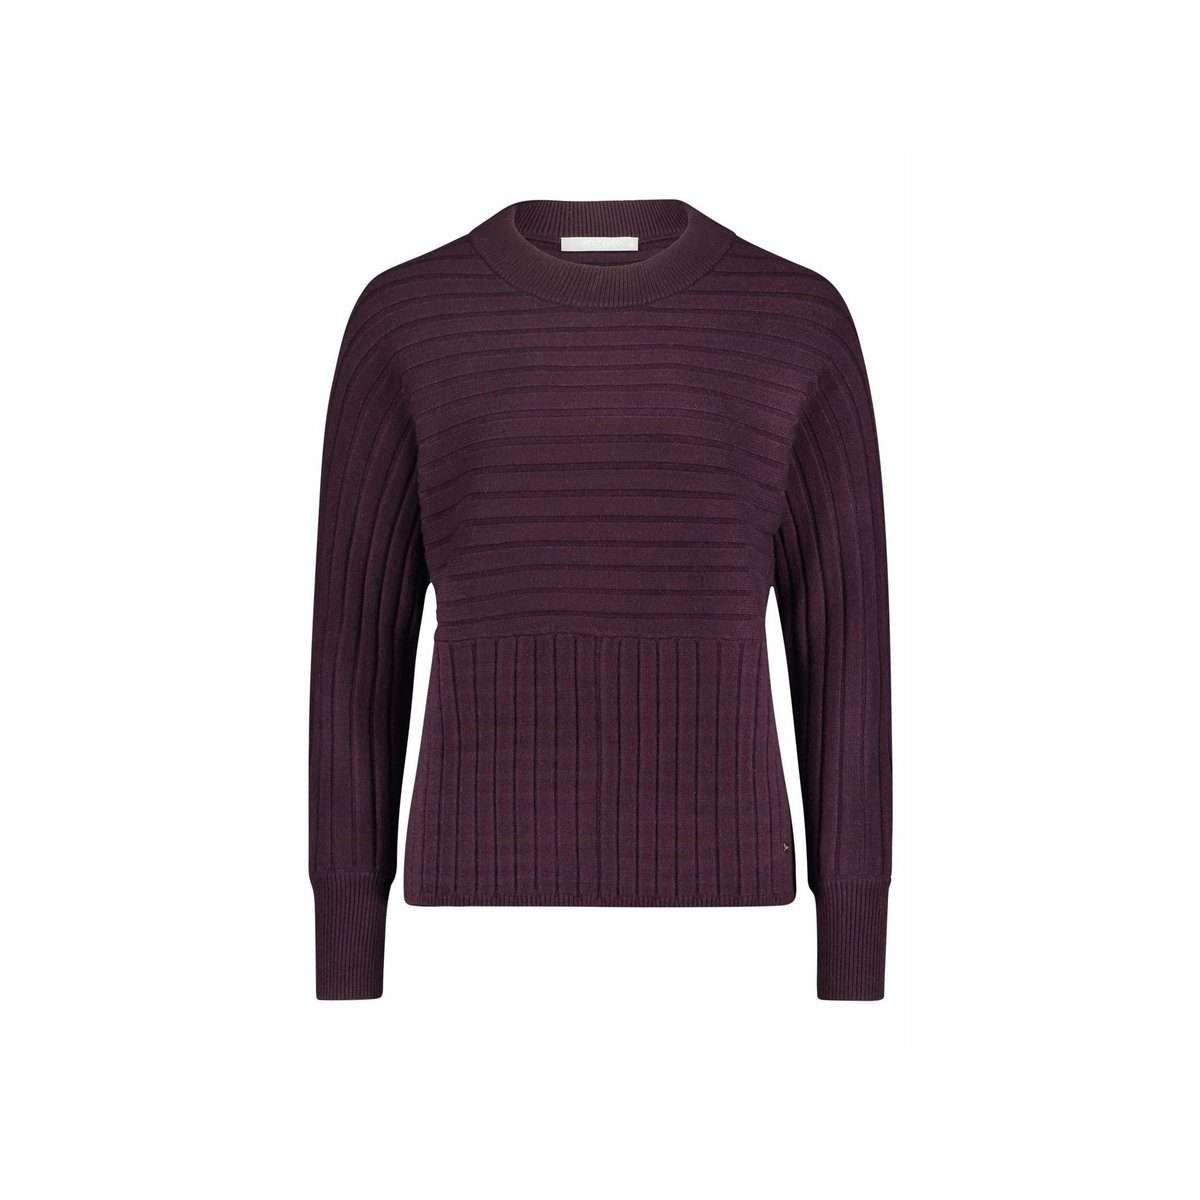 Длинный свитер фиолетовый (1 шт.)